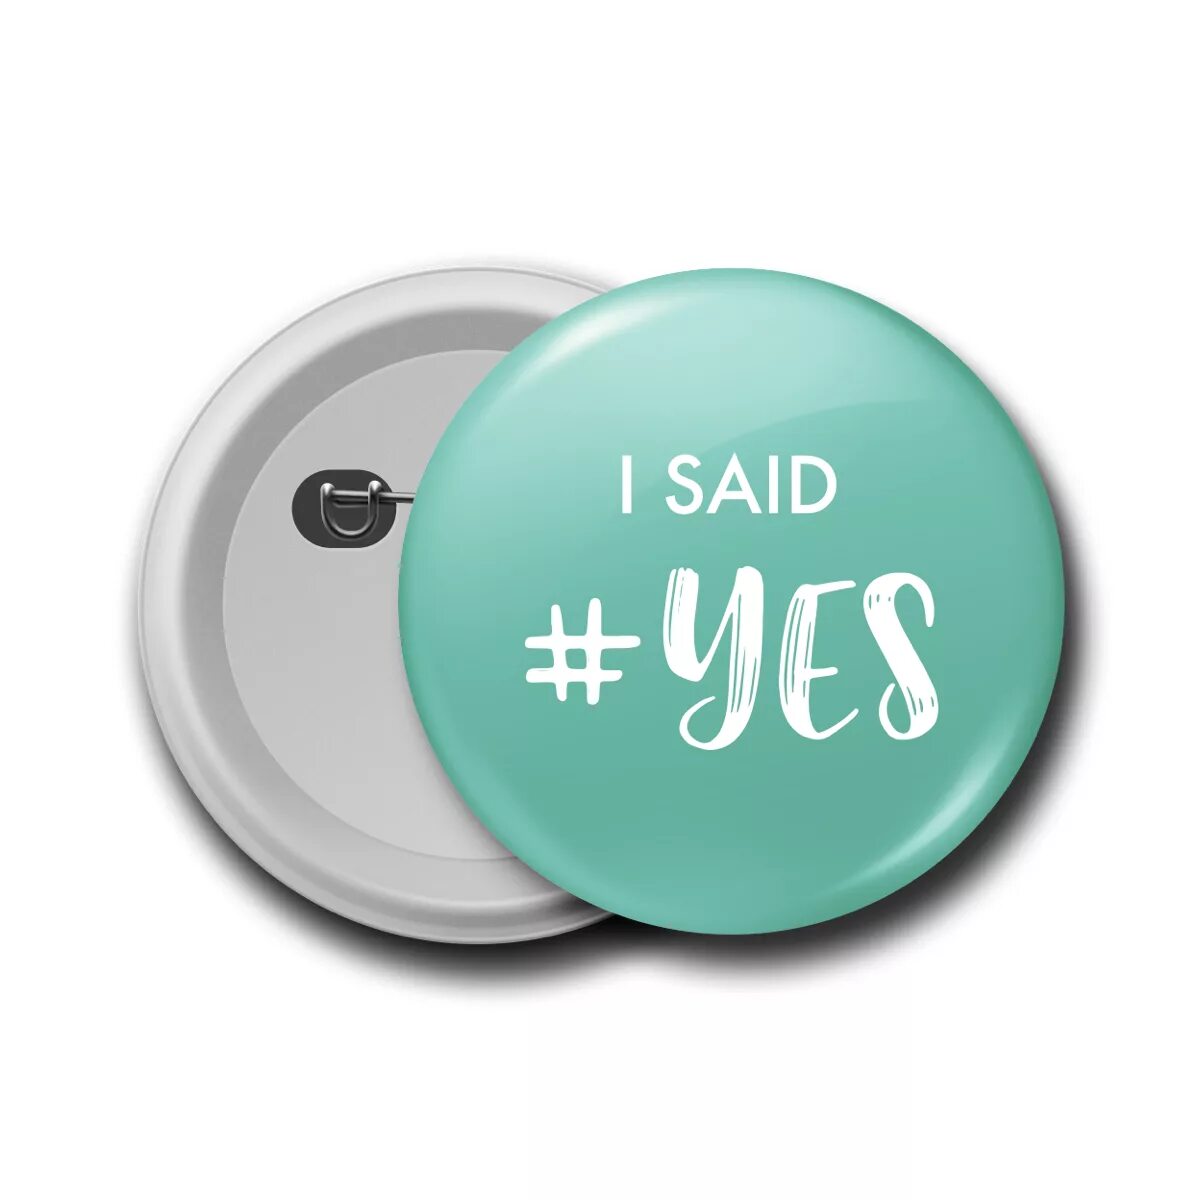 Say Yes косметика. I said Yes. Логотип i said Yes. I said Yes кольцо.